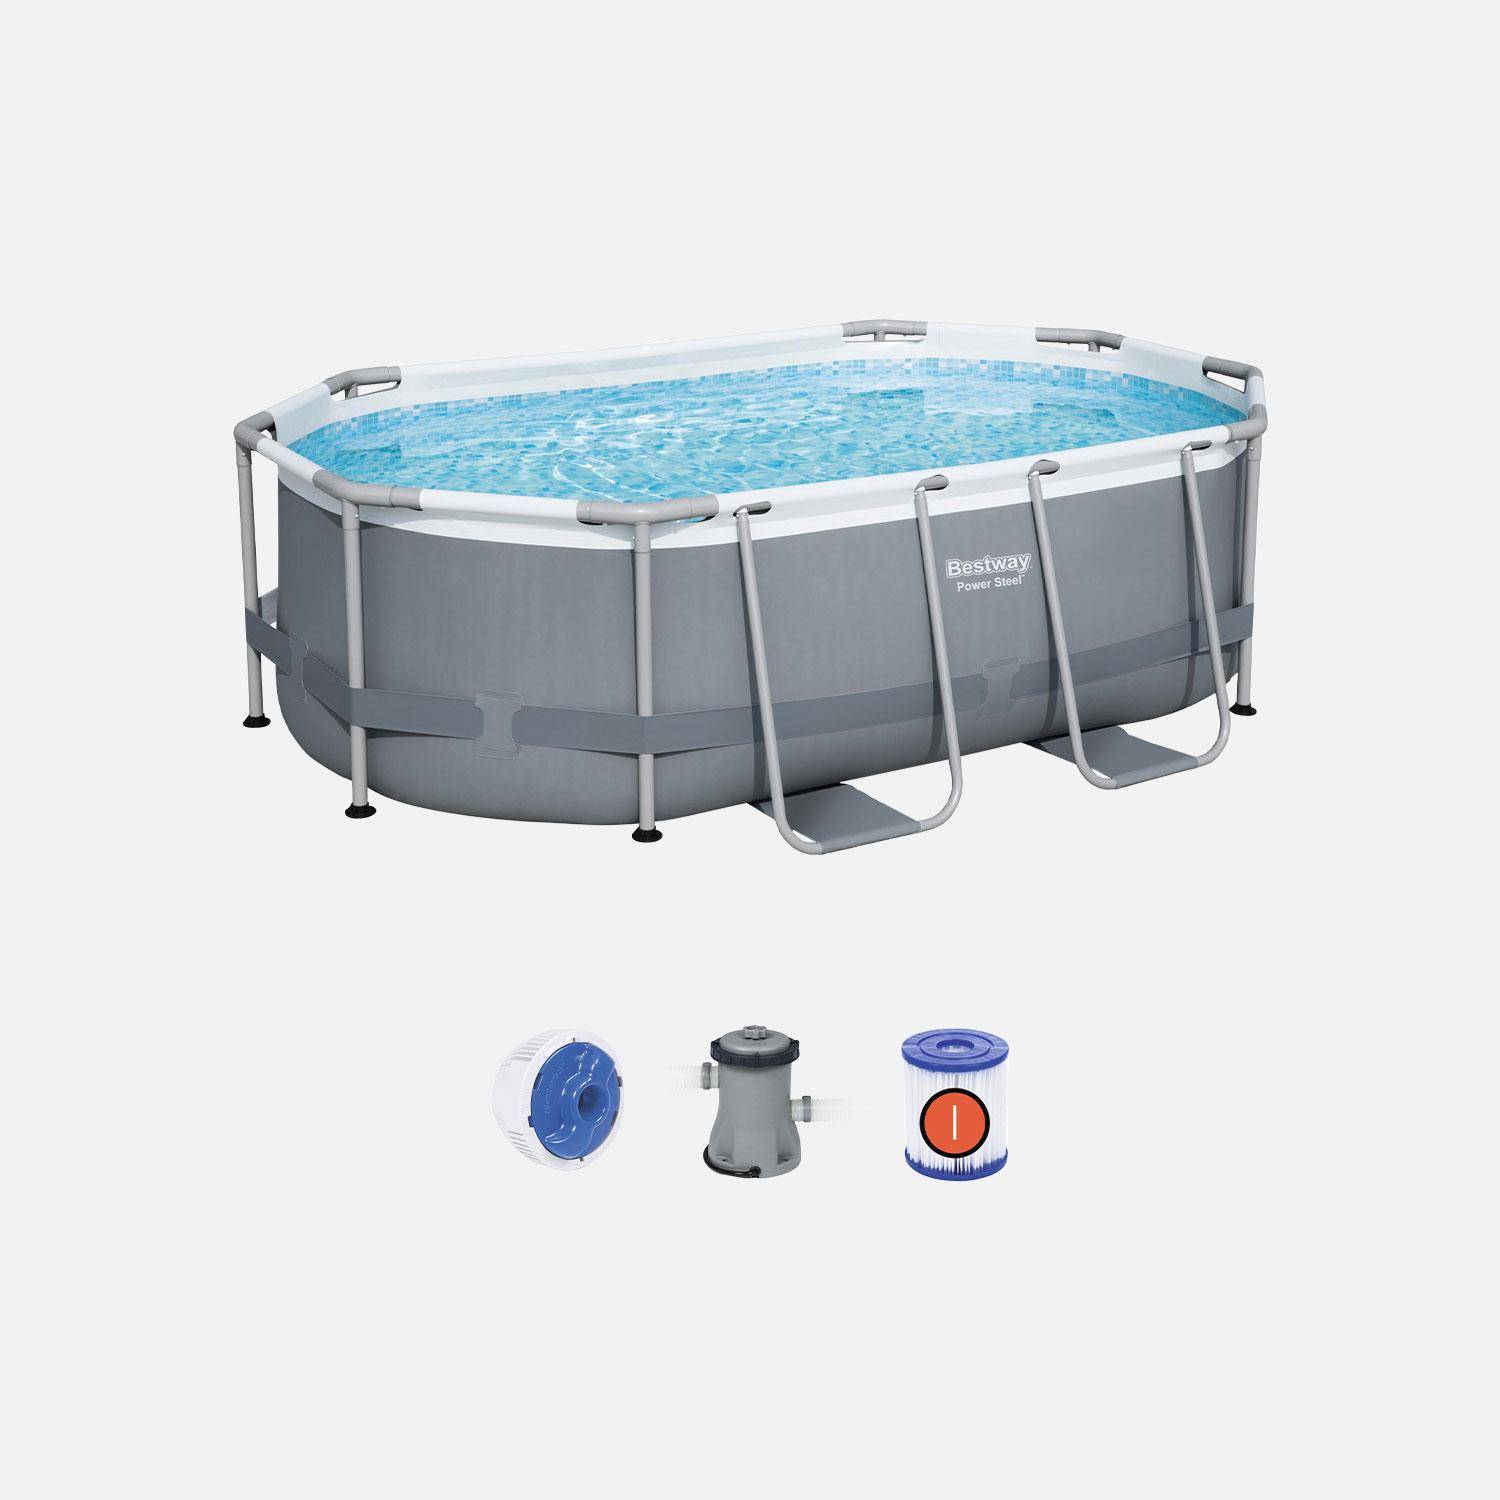 Kit piscine complet BESTWAY – Spinelle grise – piscine ovale tubulaire 3x2 m, pompe de filtration et kit de réparation inclus  Photo1